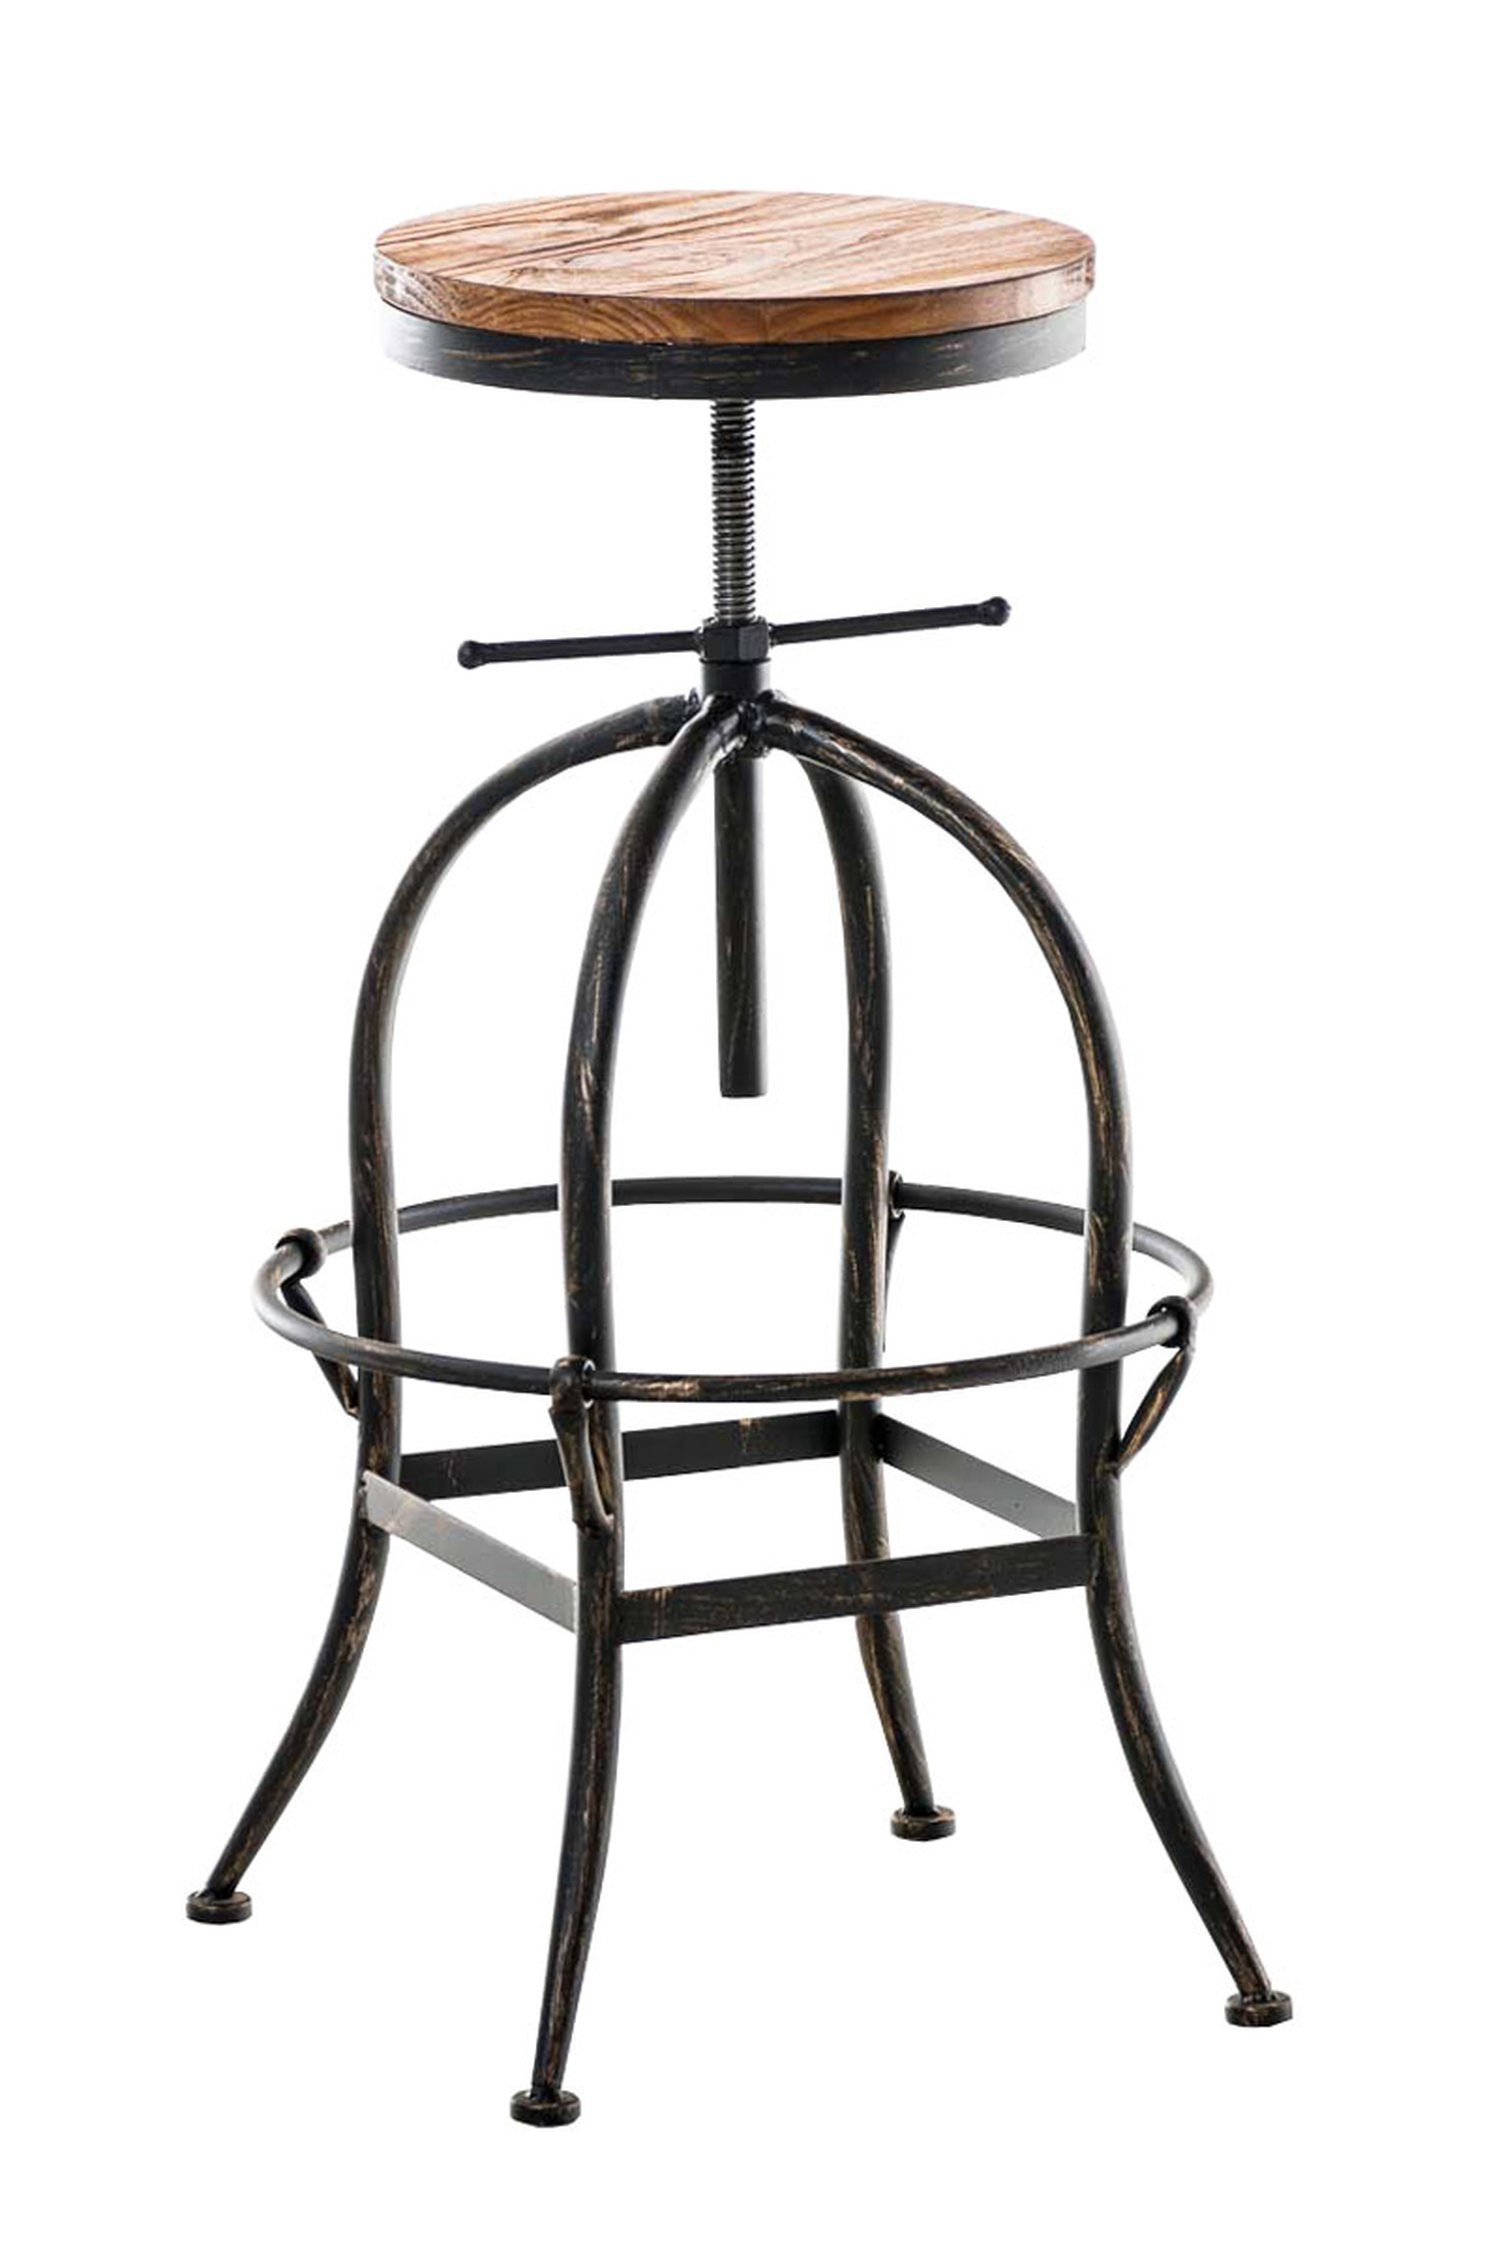 Tresenhocker für angenehmer Gestell Theke Küche), mit bronze Barhocker Hocker & TPFLiving 4-Fuß - (mit - Metall Holz Fußstütze Sitzfläche: Strong